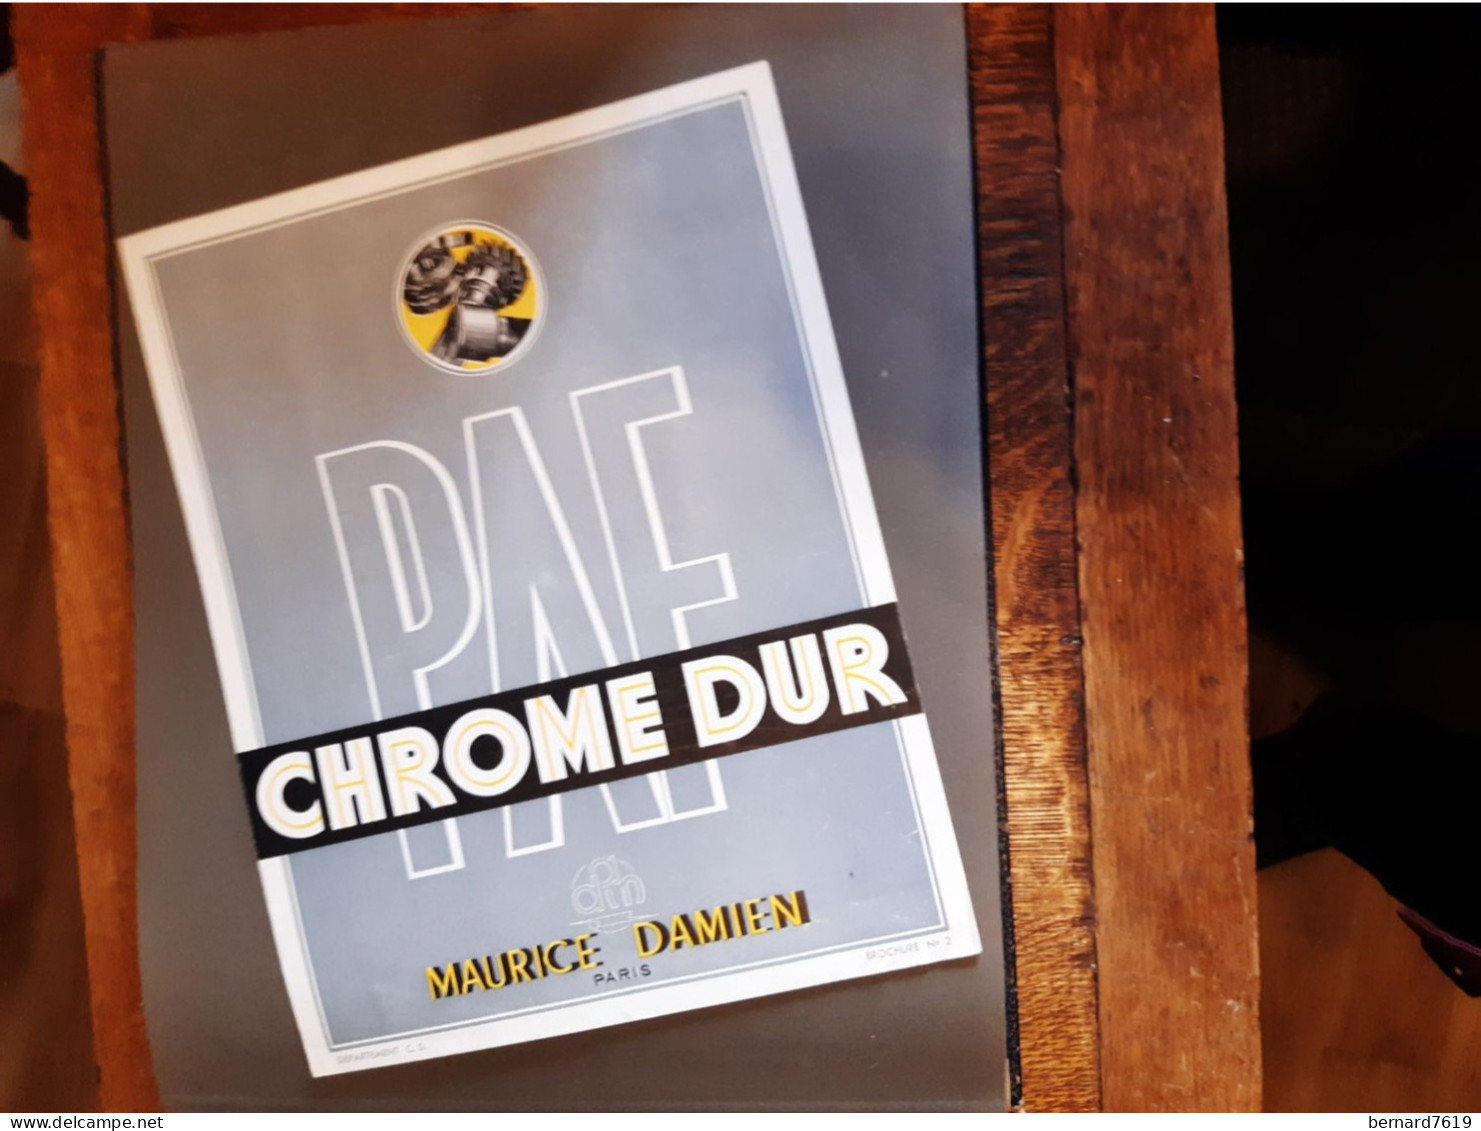 Publicite Annee Vers  1950 - Chrome Dur  Maurice Damien Paris - Byrrh - La Telephonie Francaise Paris 75011 - Advertising